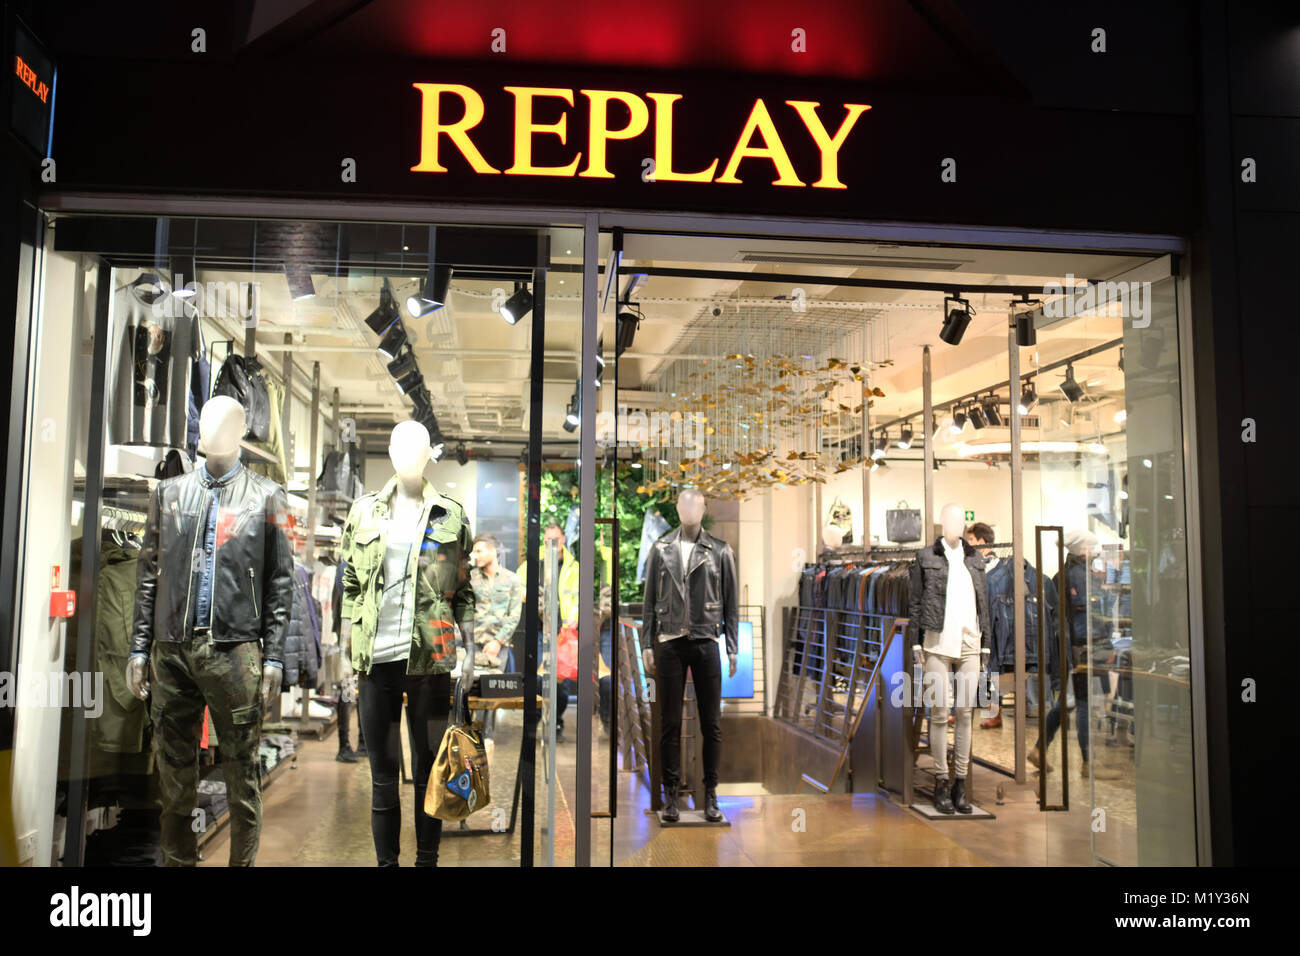 Replay shop immagini e fotografie stock ad alta risoluzione - Alamy